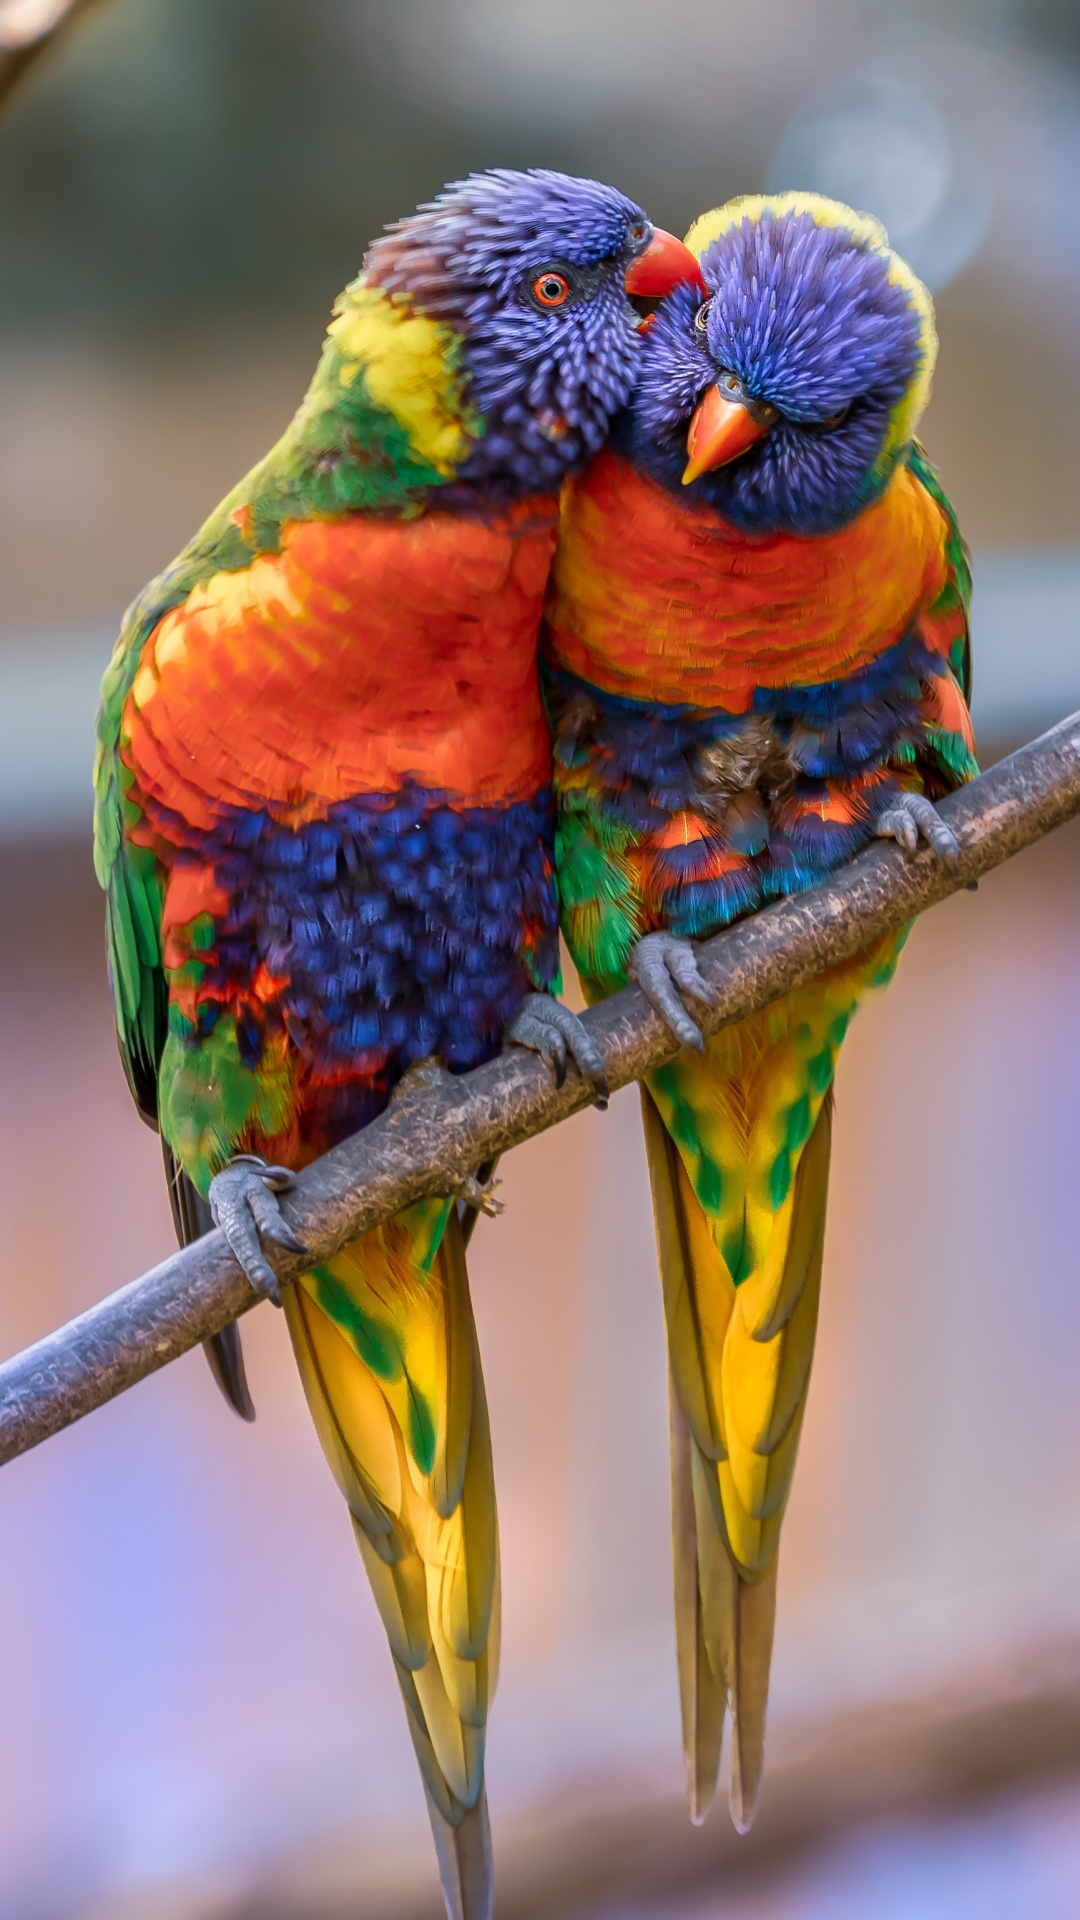 彩虹澳洲鹦鹉, 金刚鹦鹉, 鸟, 澳洲鹦鹉, 鹦鹉 壁纸 1080x1920 允许